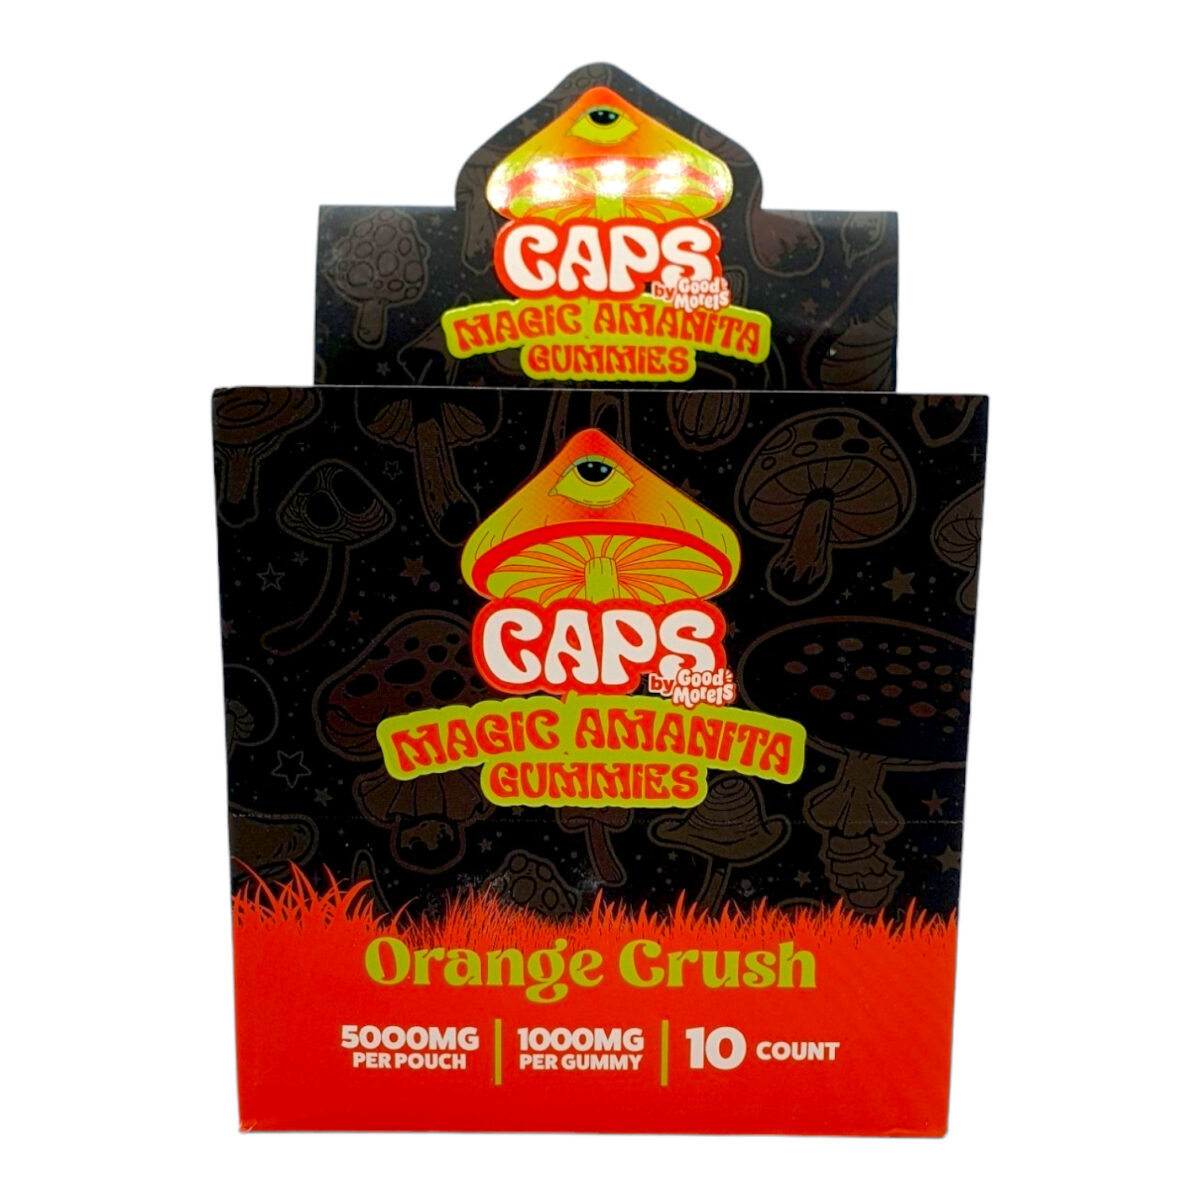 CAPS Mushroom Amanita Gummies Orange Crush – 5ct